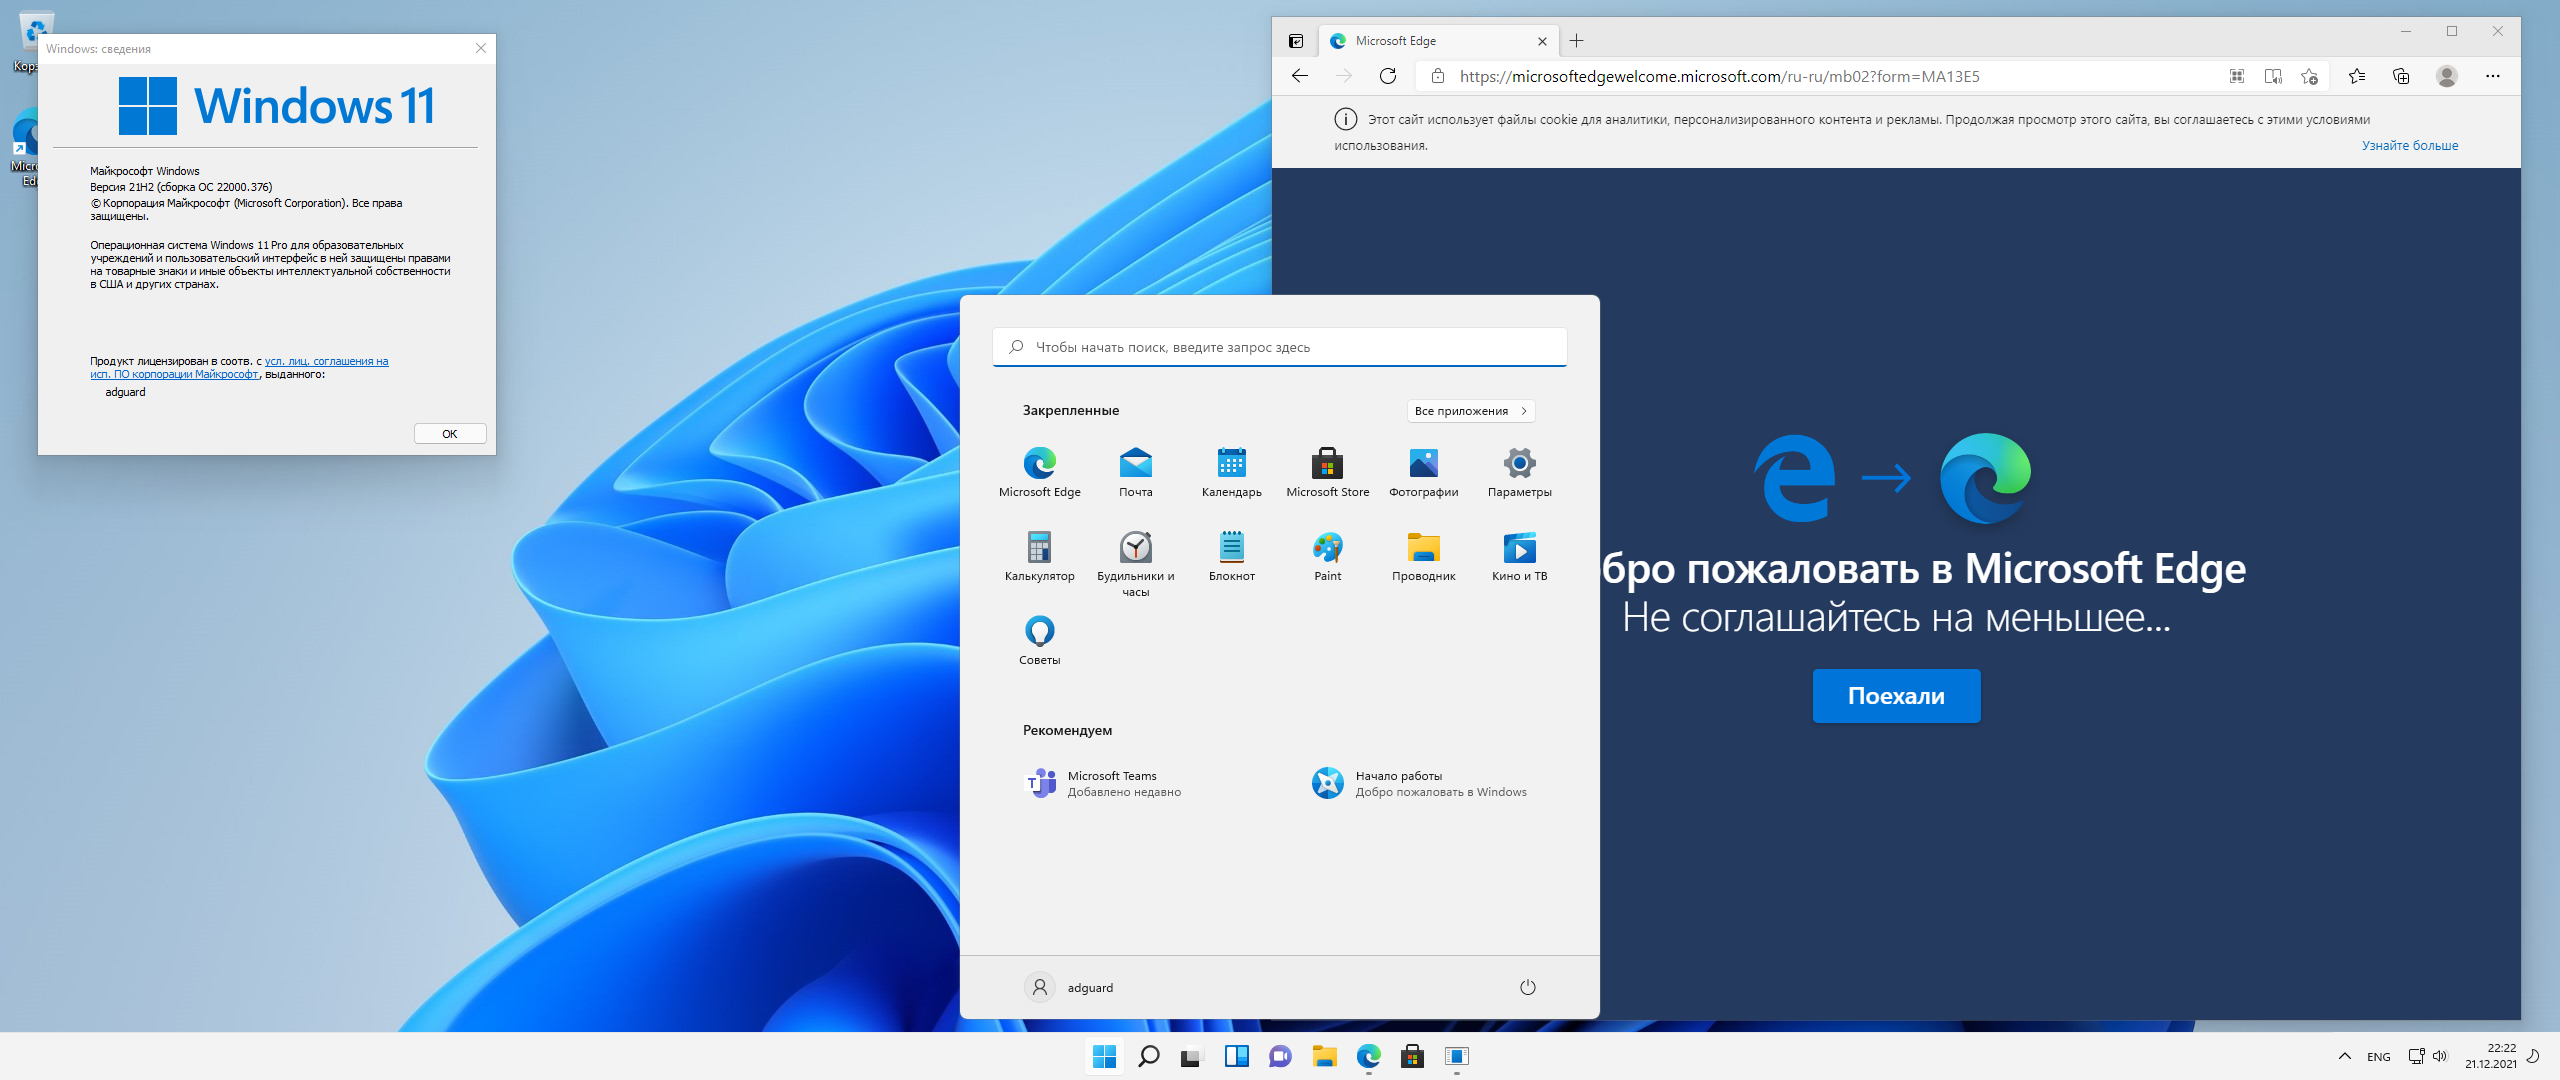 Скачать телеграмм на ноутбук бесплатно на русском языке для виндовс 10 фото 105